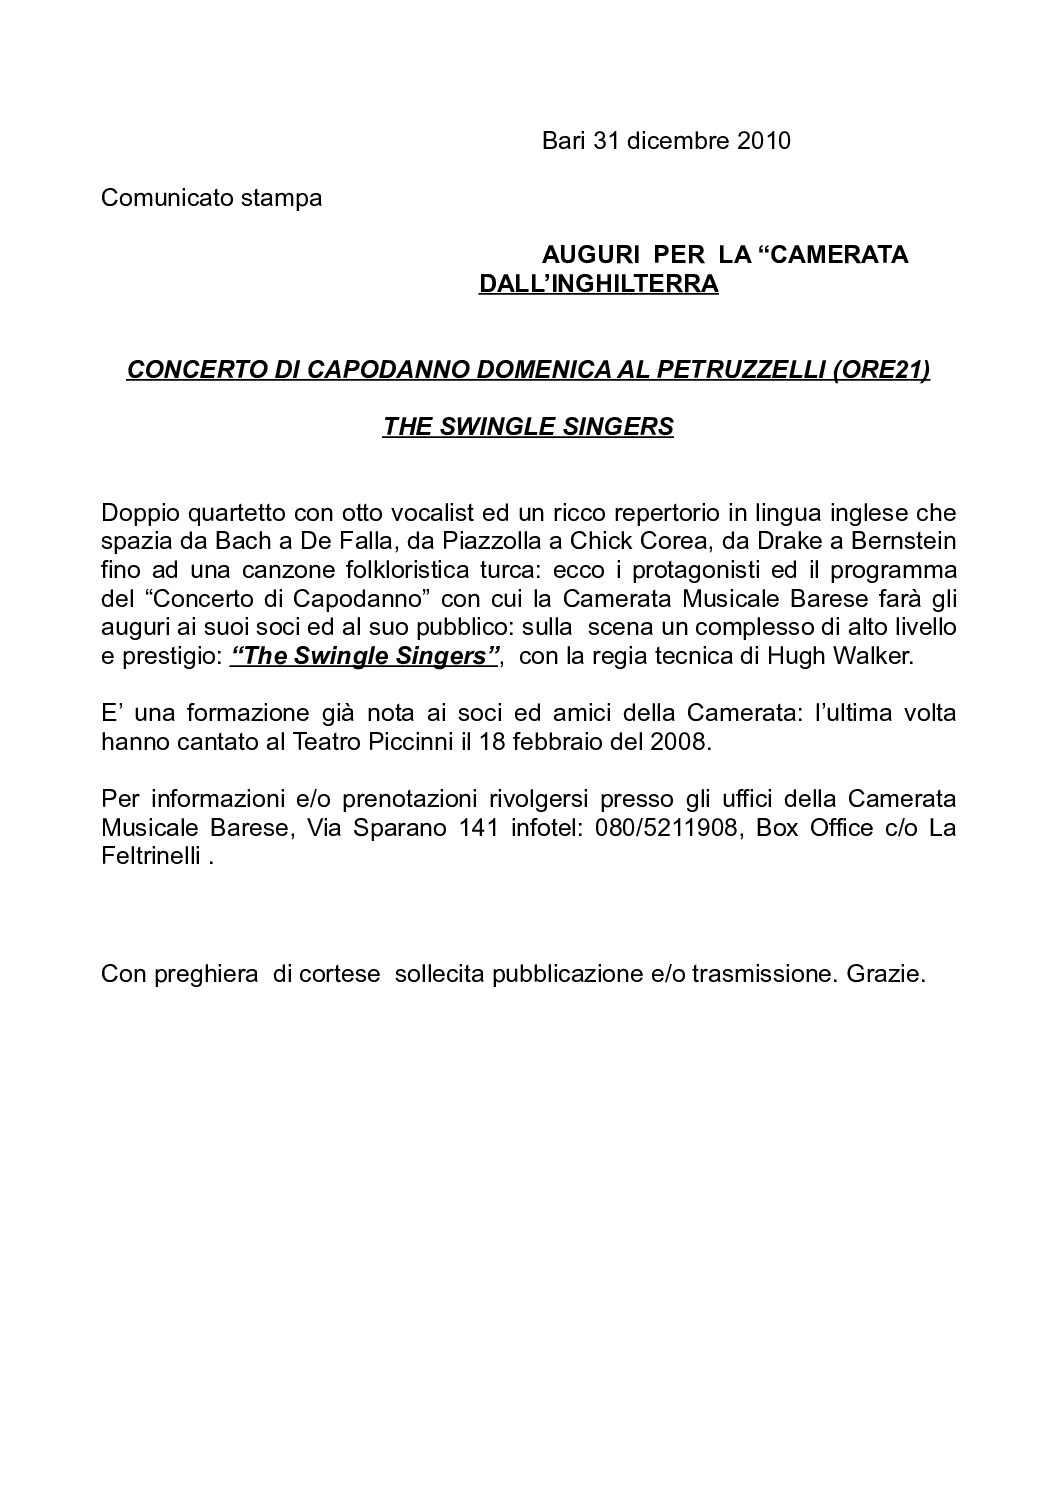 CONCERTO DI CAPODANNO DOMENICA AL PETRUZZELLI (ORE21) THE SWINGLE SINGERS